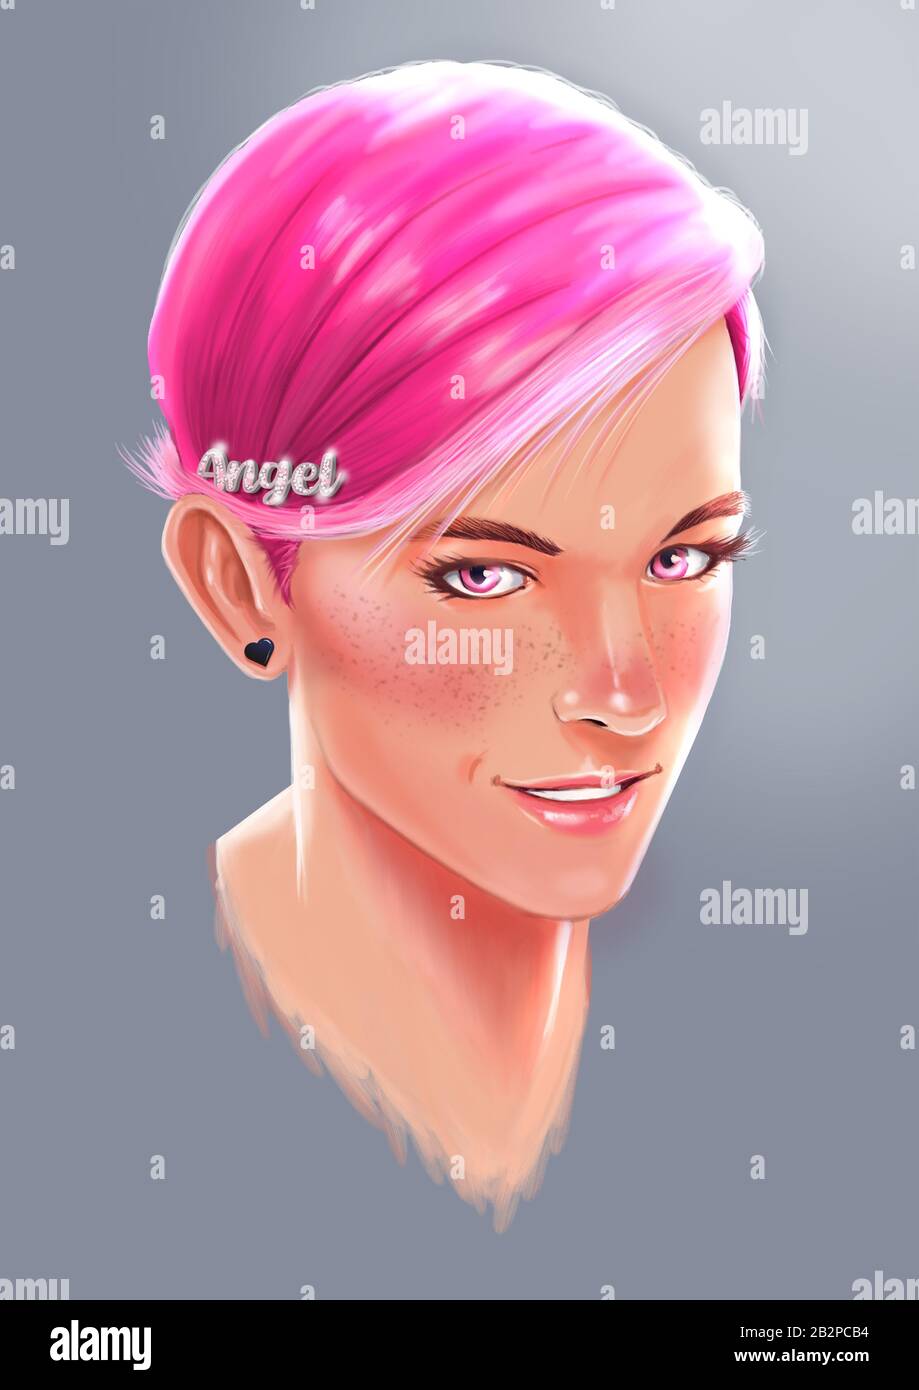 Illustrazione digitale del ritratto della ragazza con capelli rosa corti e occhi rosa Foto Stock